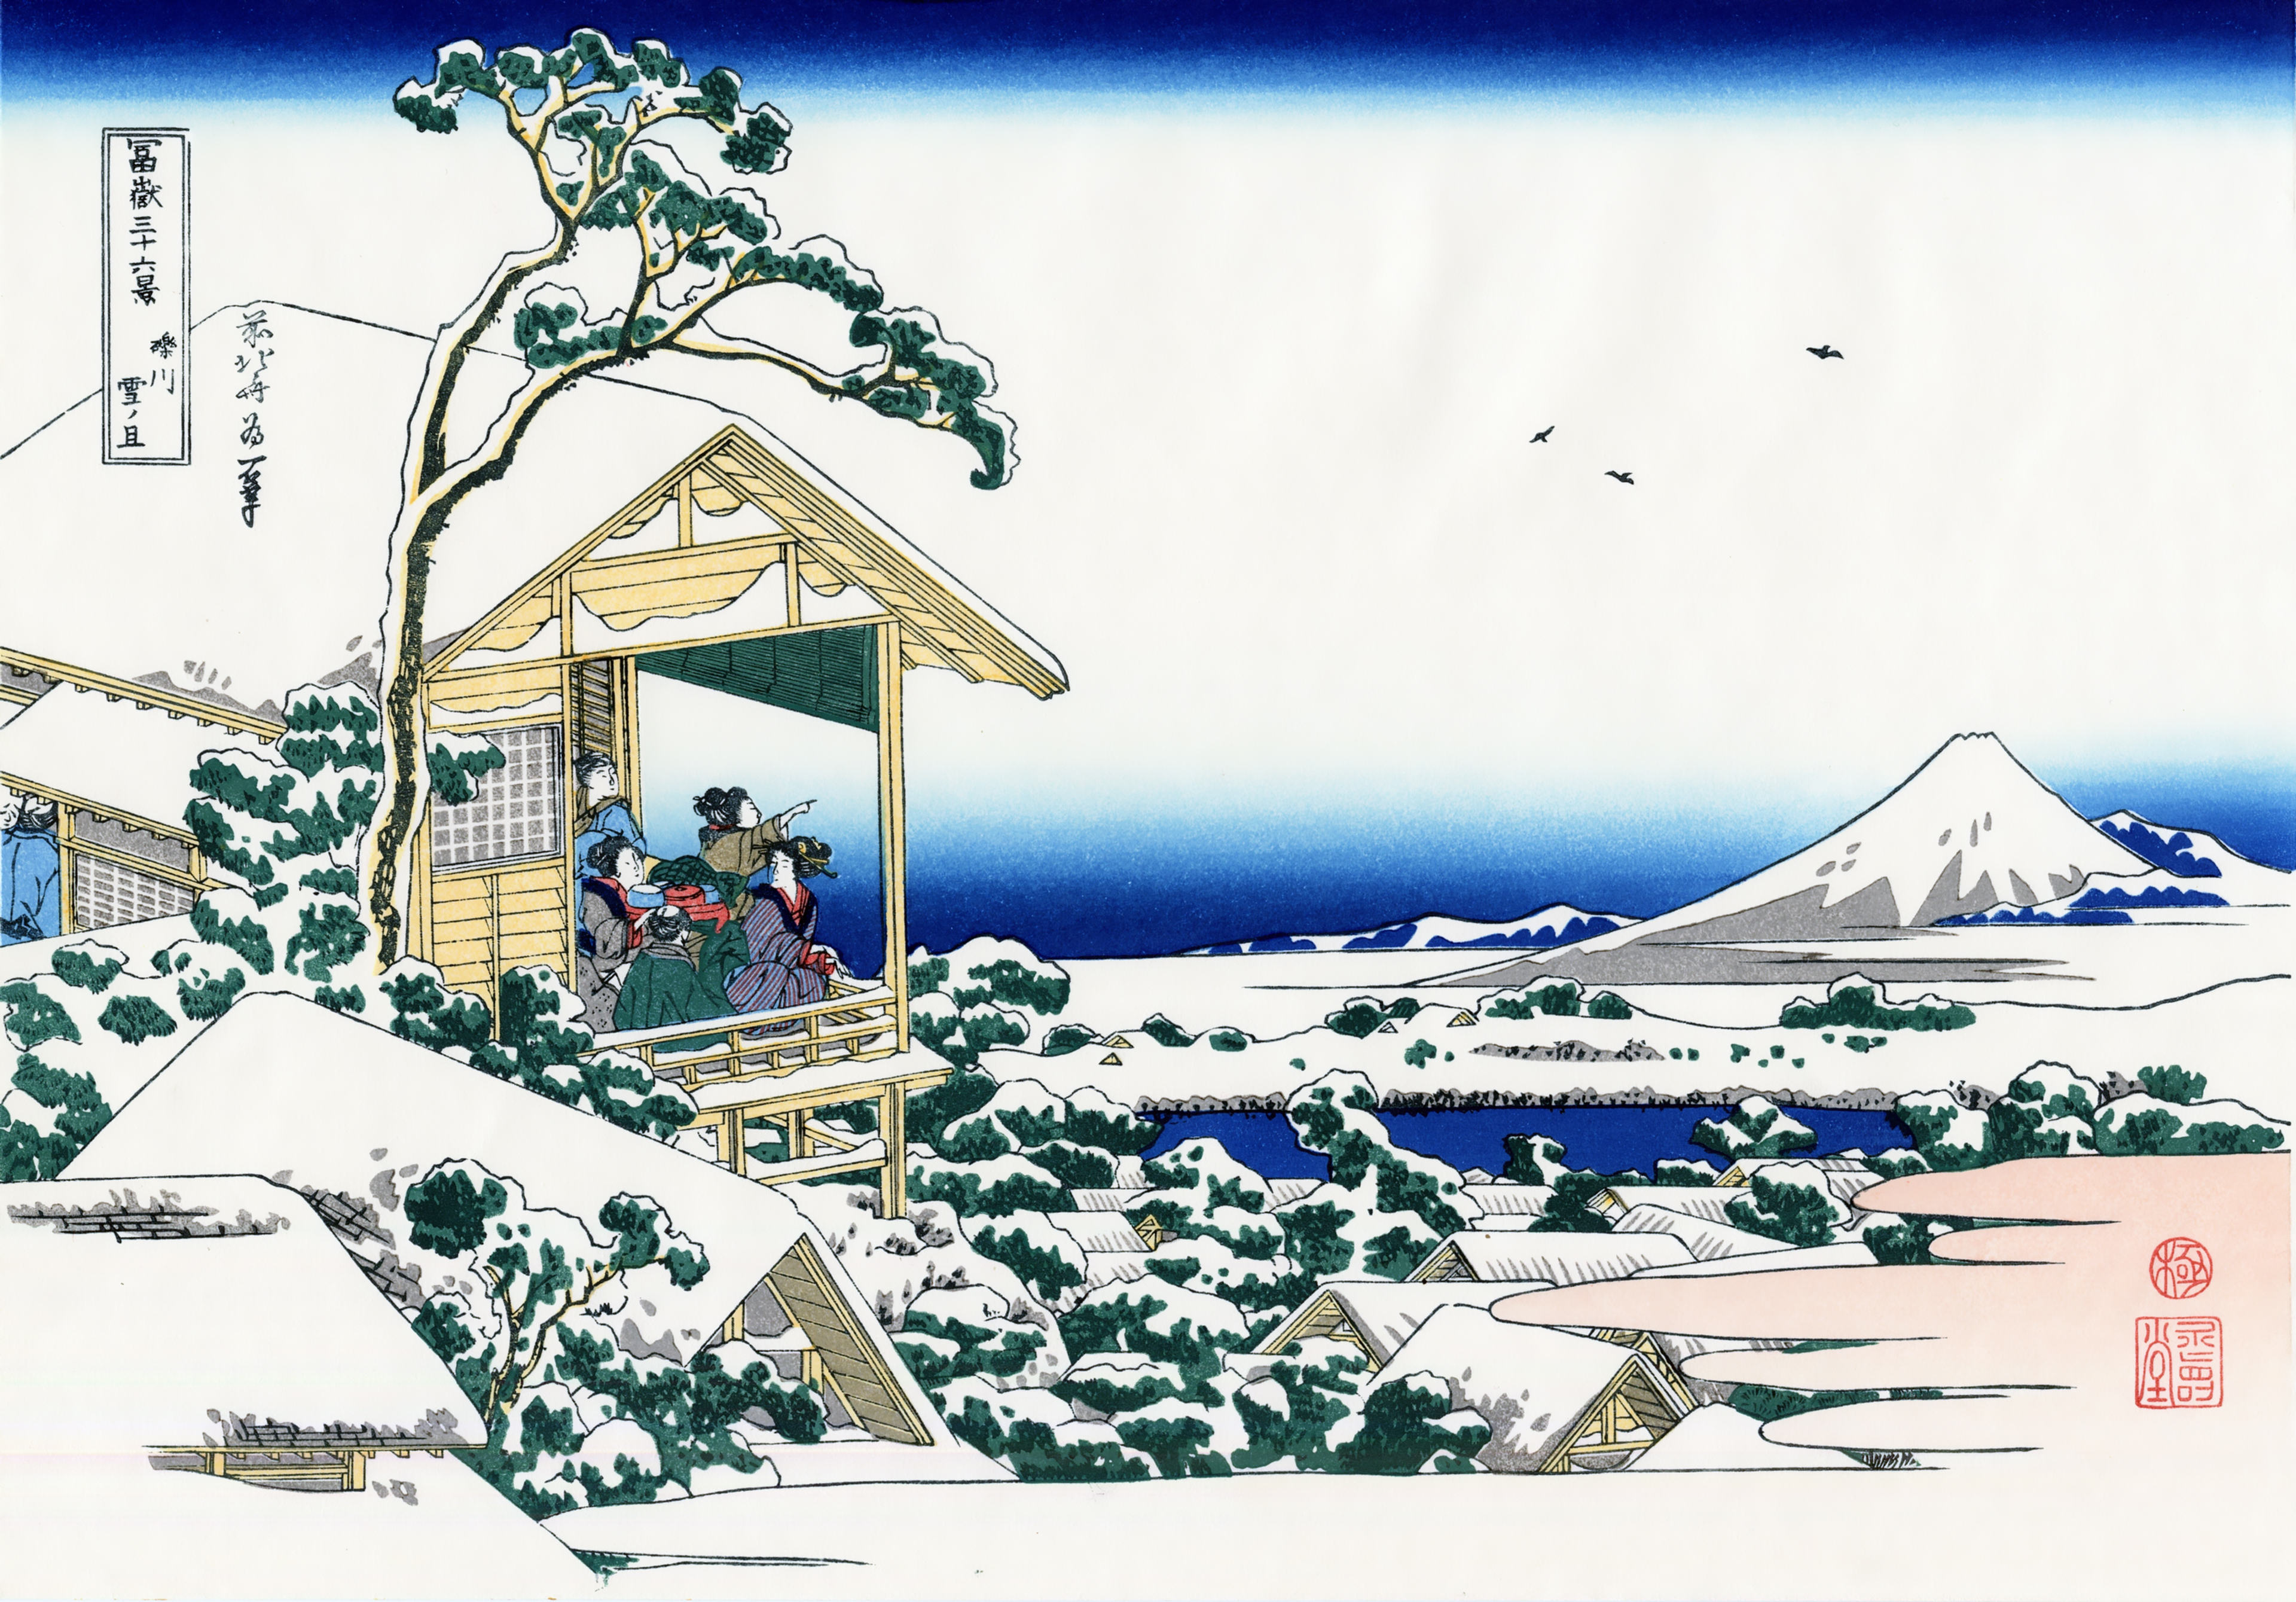 礫川雪ノ且 こいしかわゆきのあした 富嶽三十六景 葛飾北斎 壁紙画像 ミヤノーヴァ